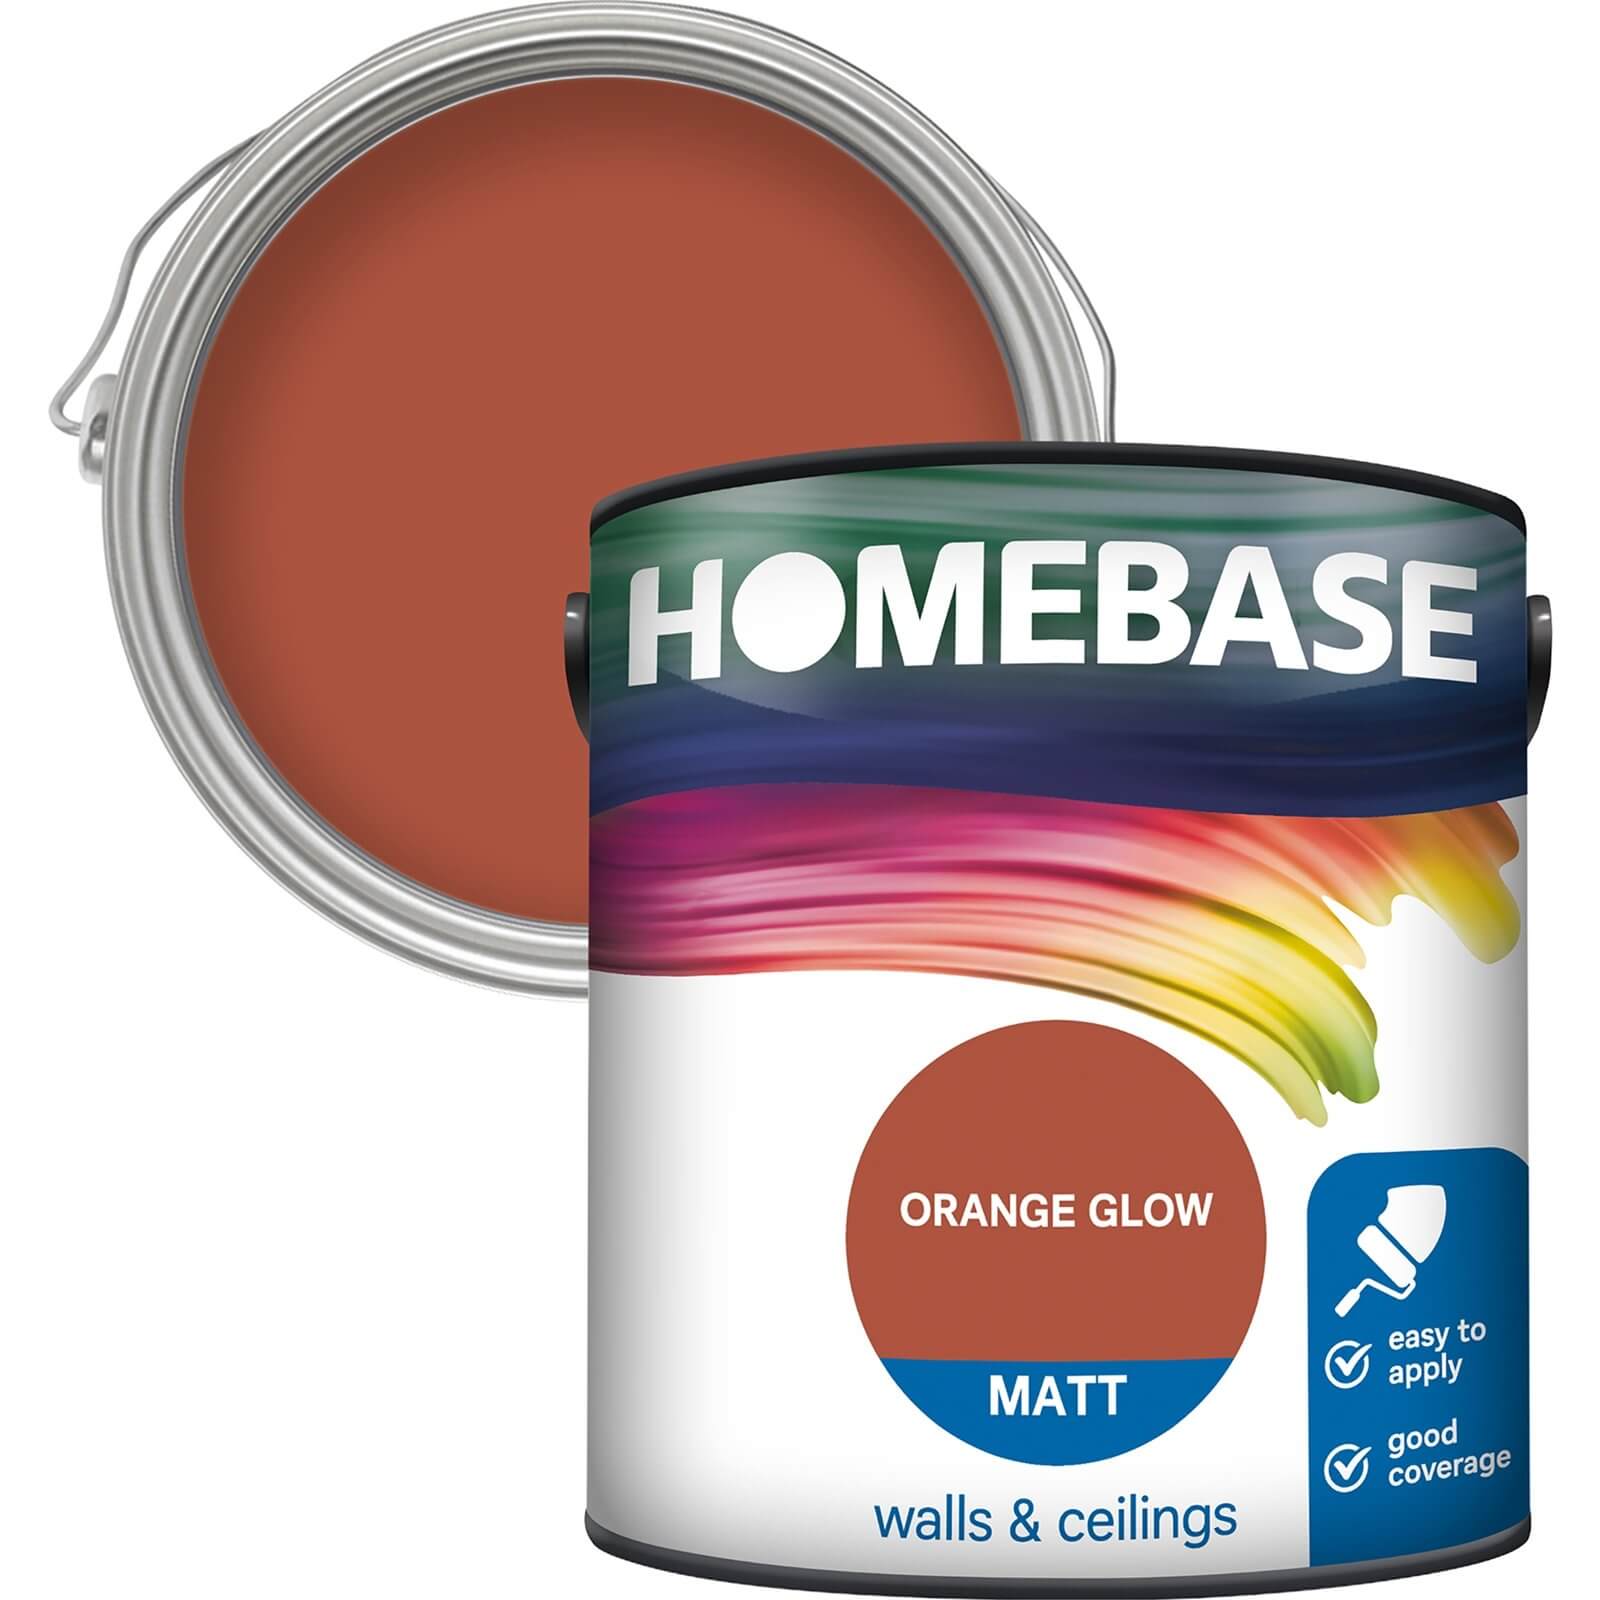 Homebase Matt Emulsion Paint Orange Glow - 2.5L